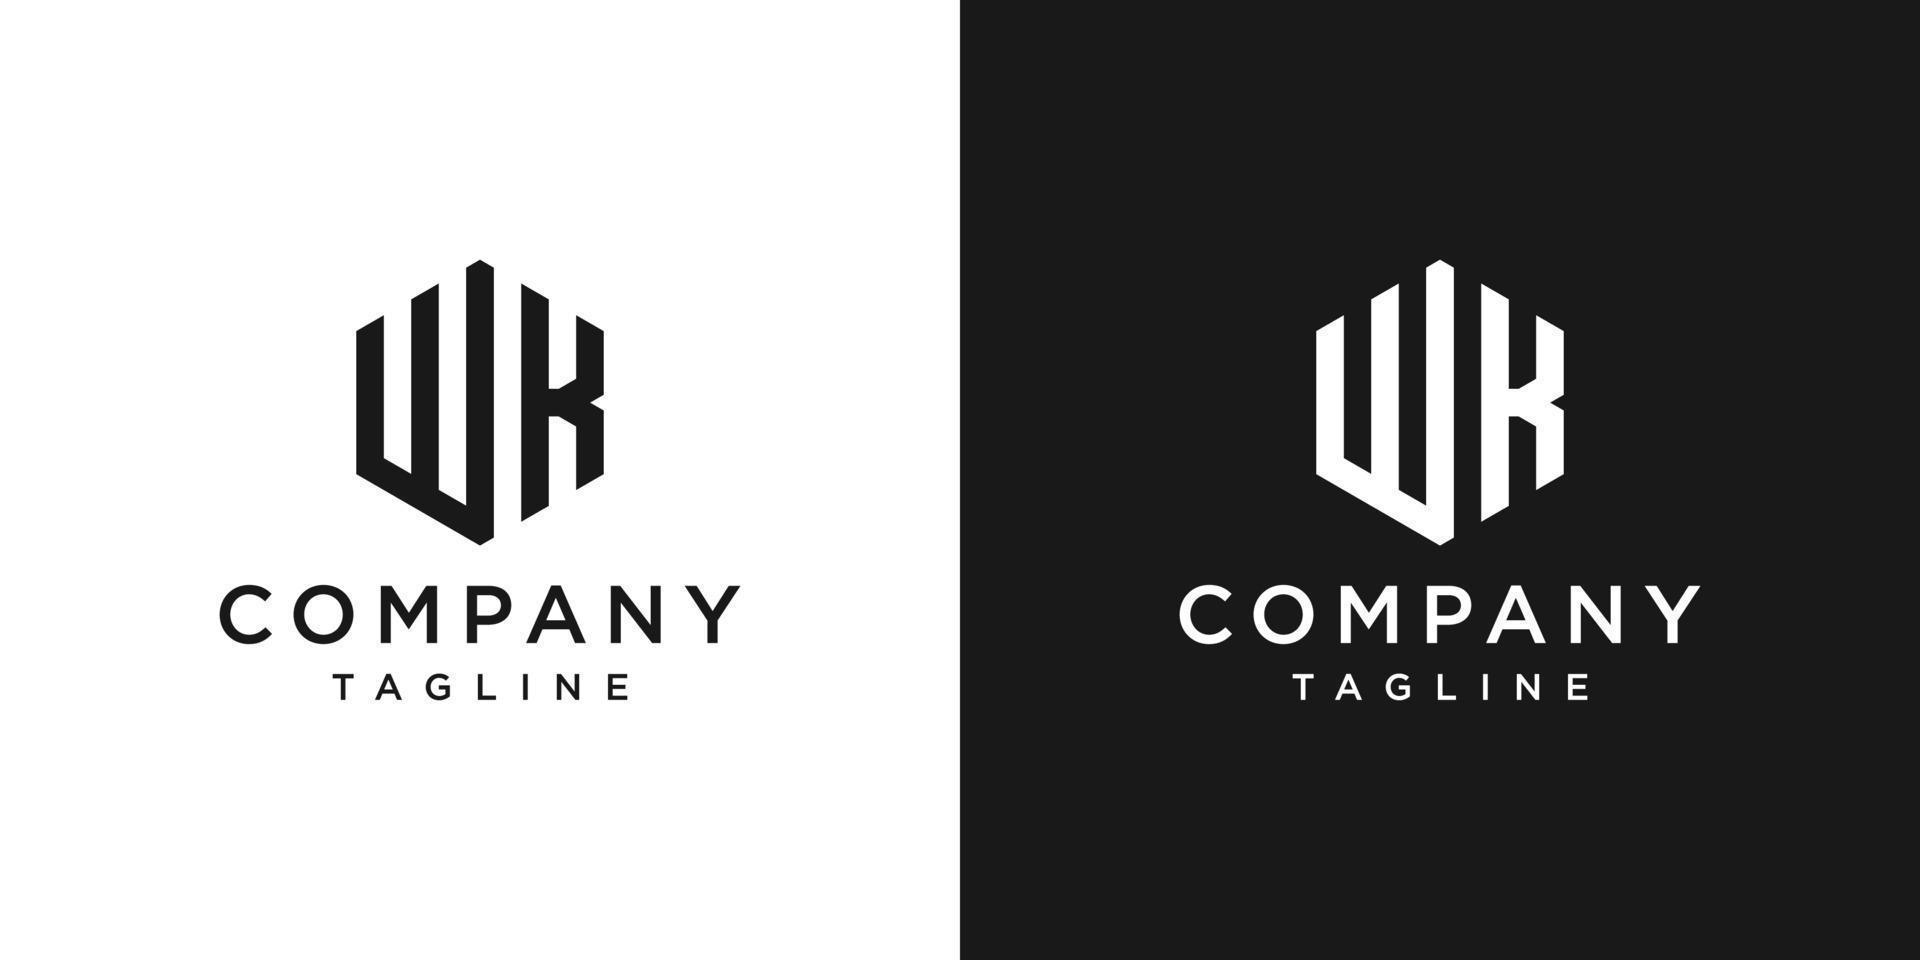 lettera creativa wk monogramma logo design icona modello sfondo bianco e nero vettore